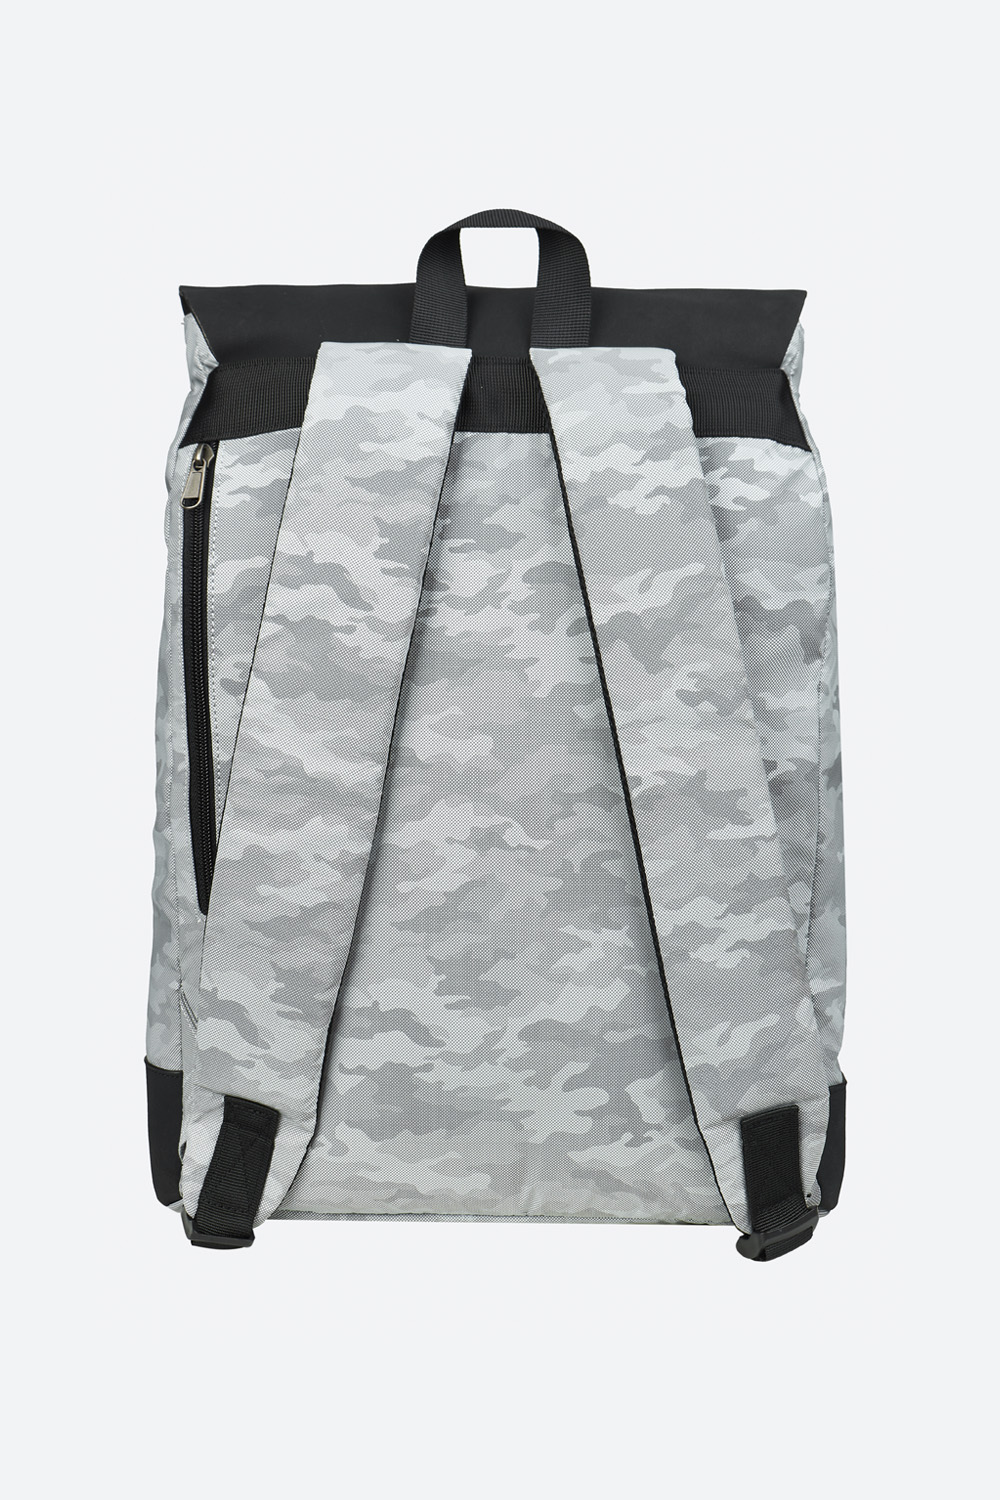 Прямоугольный рюкзак из светоотражающей ткани (SSBSU-125-39503-801) Silver spoon